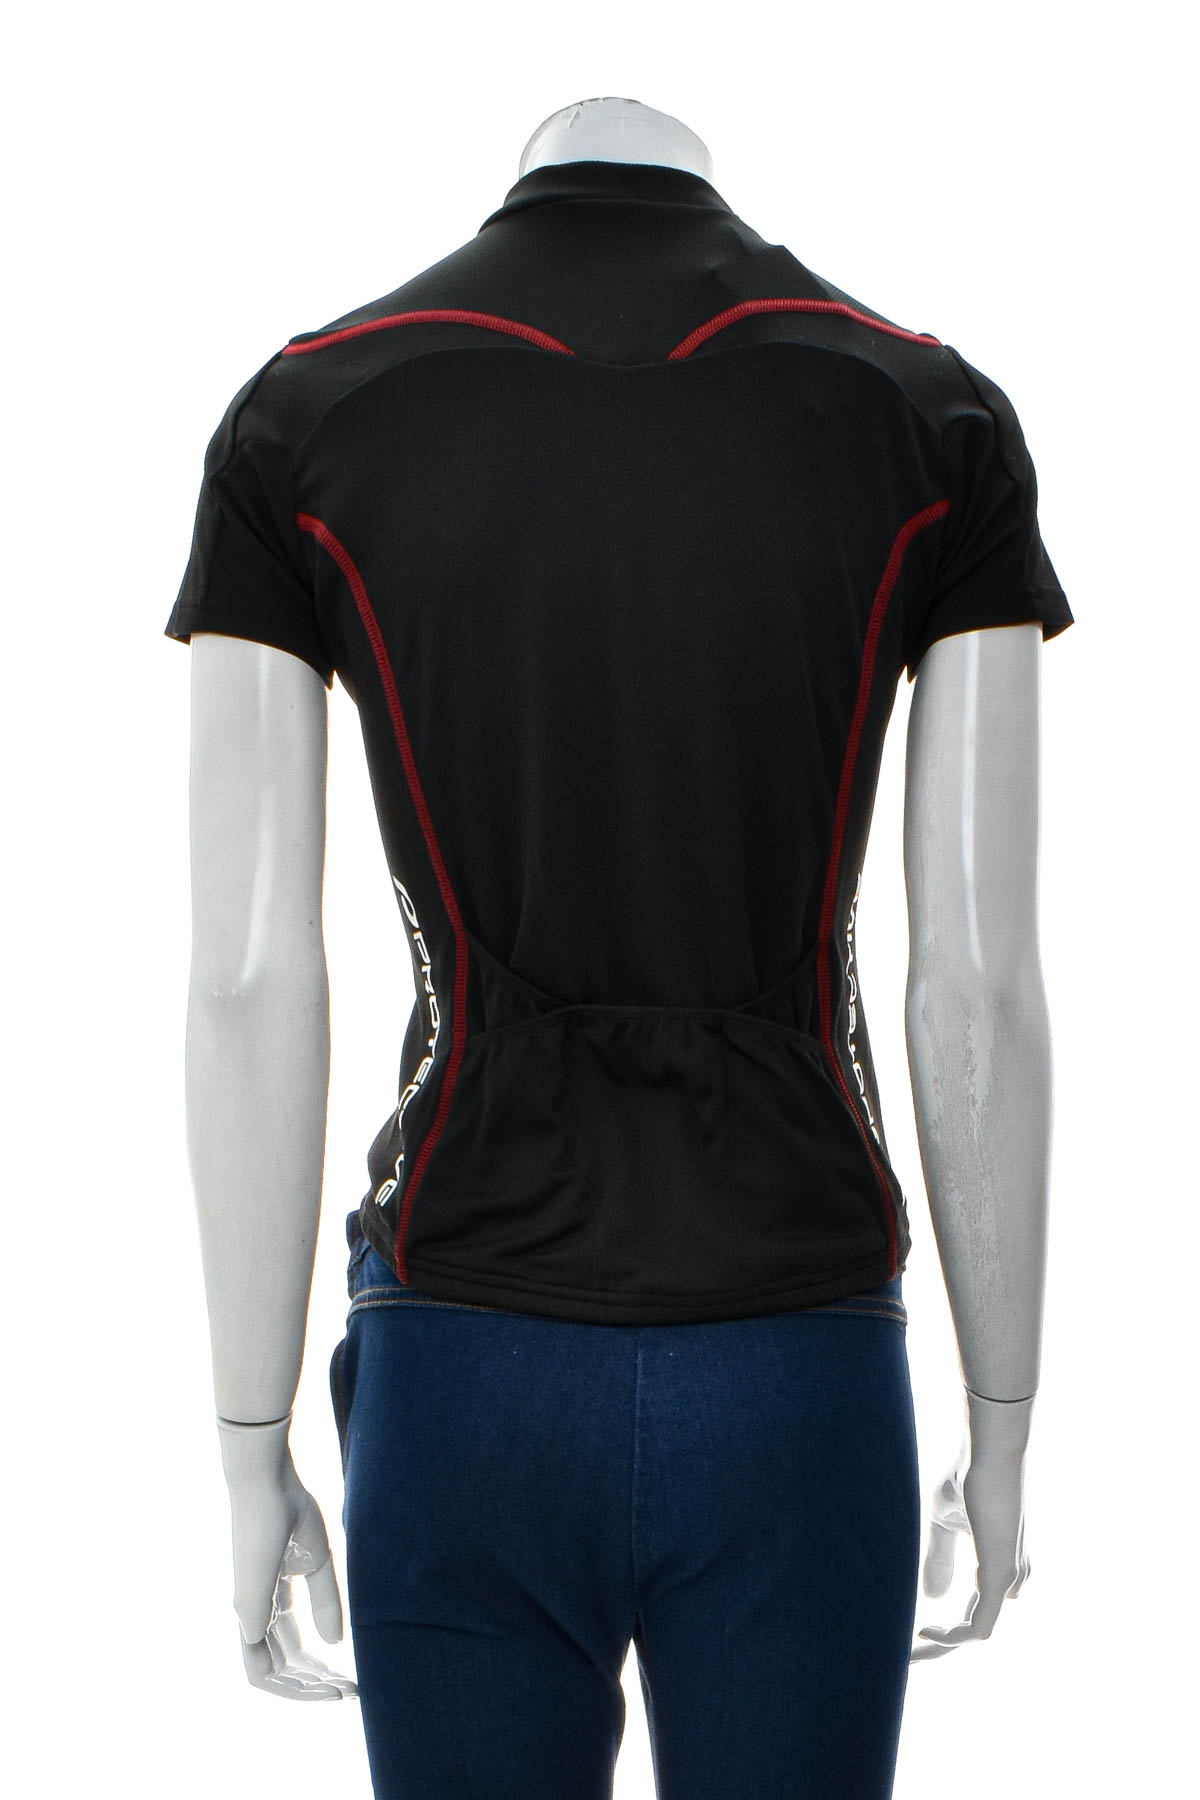 Γυναικεία μπλούζα Για ποδηλασία - PROTECTIVE - 1